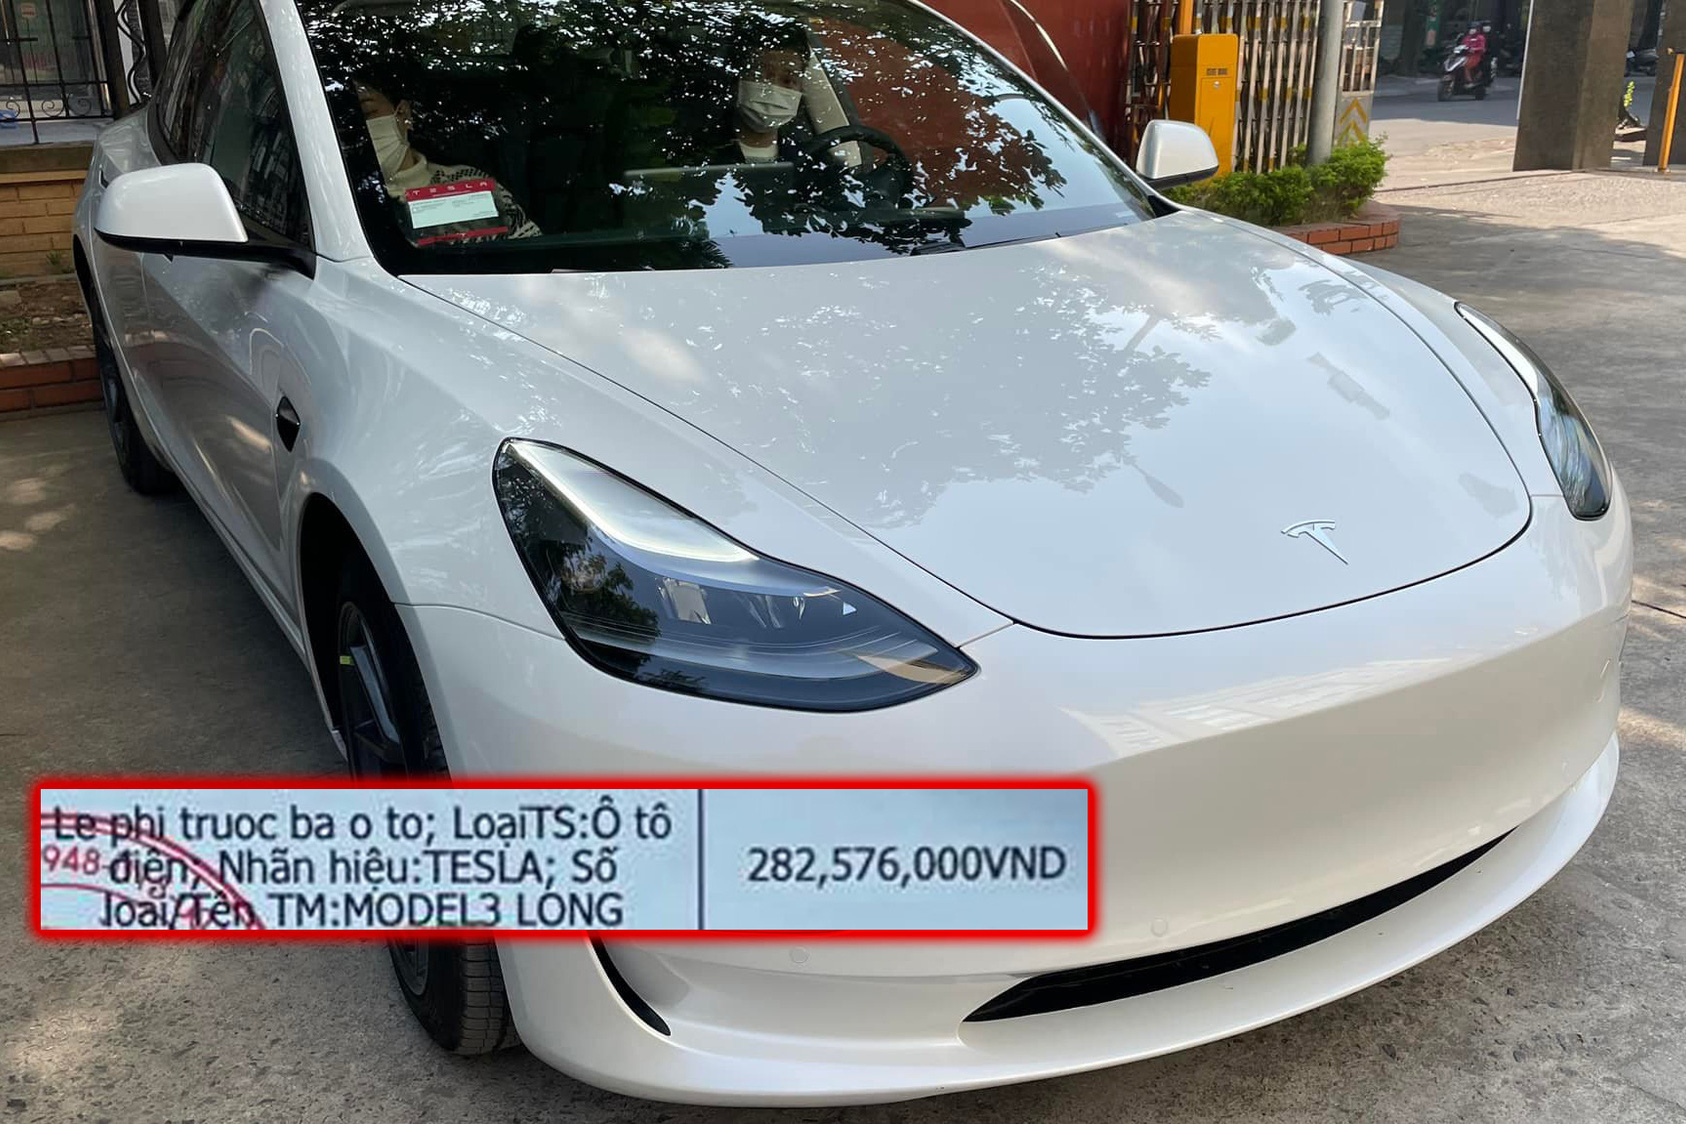 Vừa nộp trước bạ gần 300 triệu đồng, chủ xe Tesla Model 3 tại Việt Nam ngậm ngùi khi biết tin sắp miễn 100% trước bạ